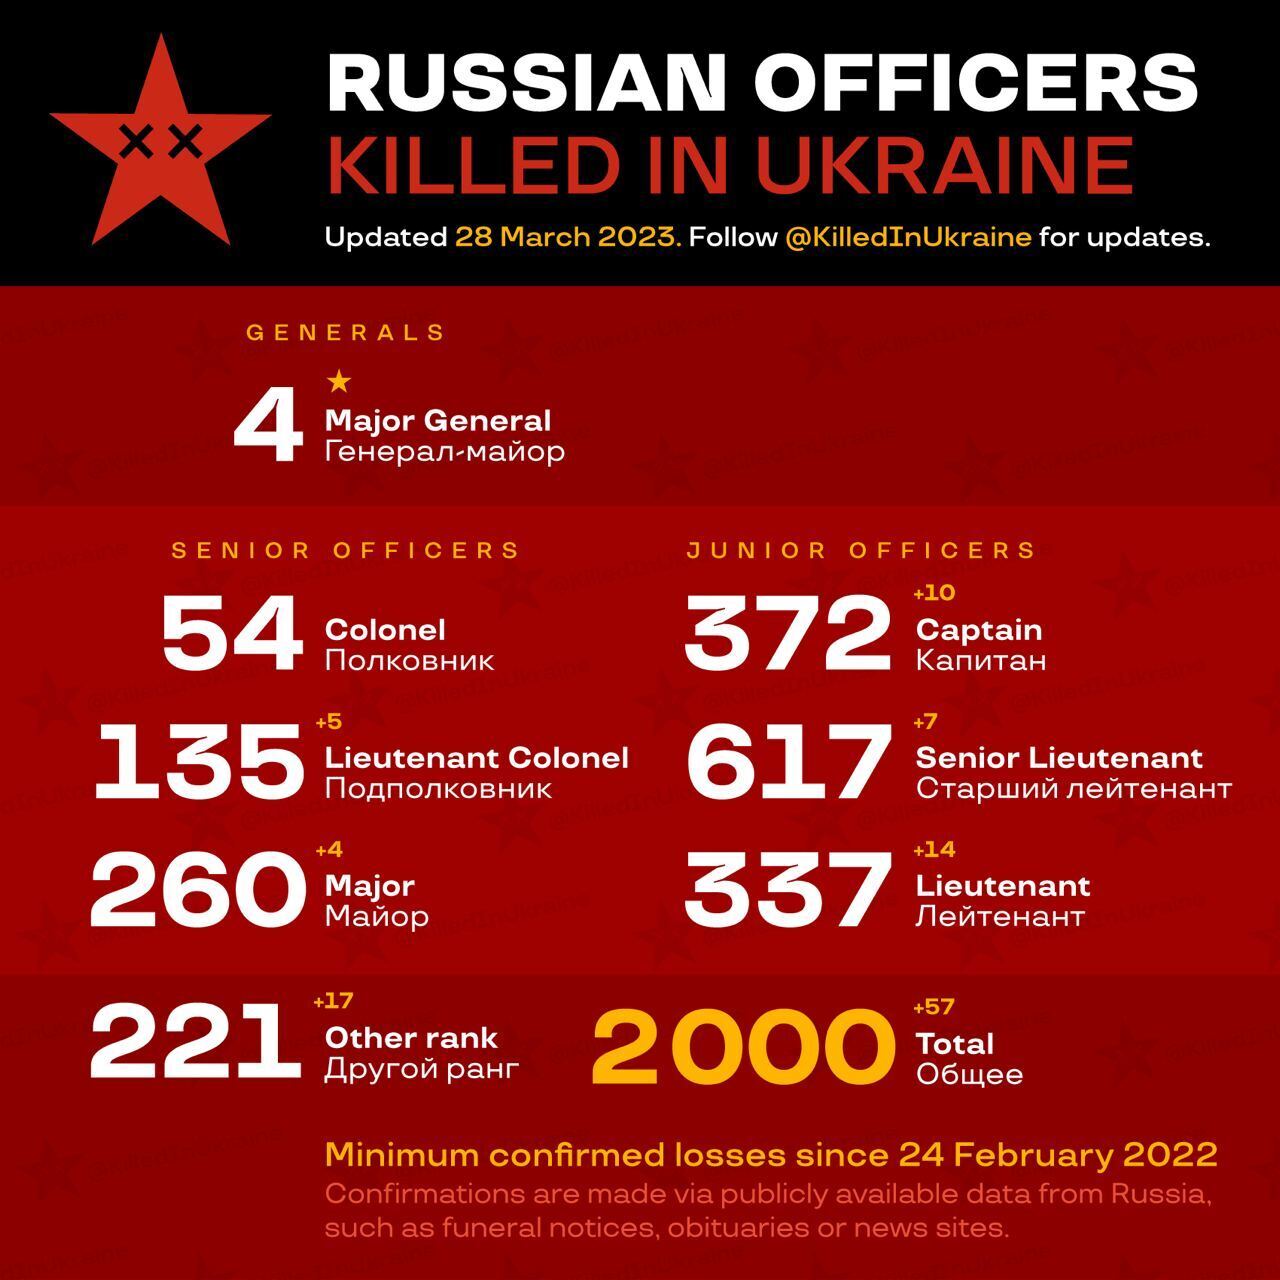 OSINT-проект KIU сообщил о 2 тысячах ликвидированных в Украине российских офицеров: реальные потери могут быть в 2-3 раза выше